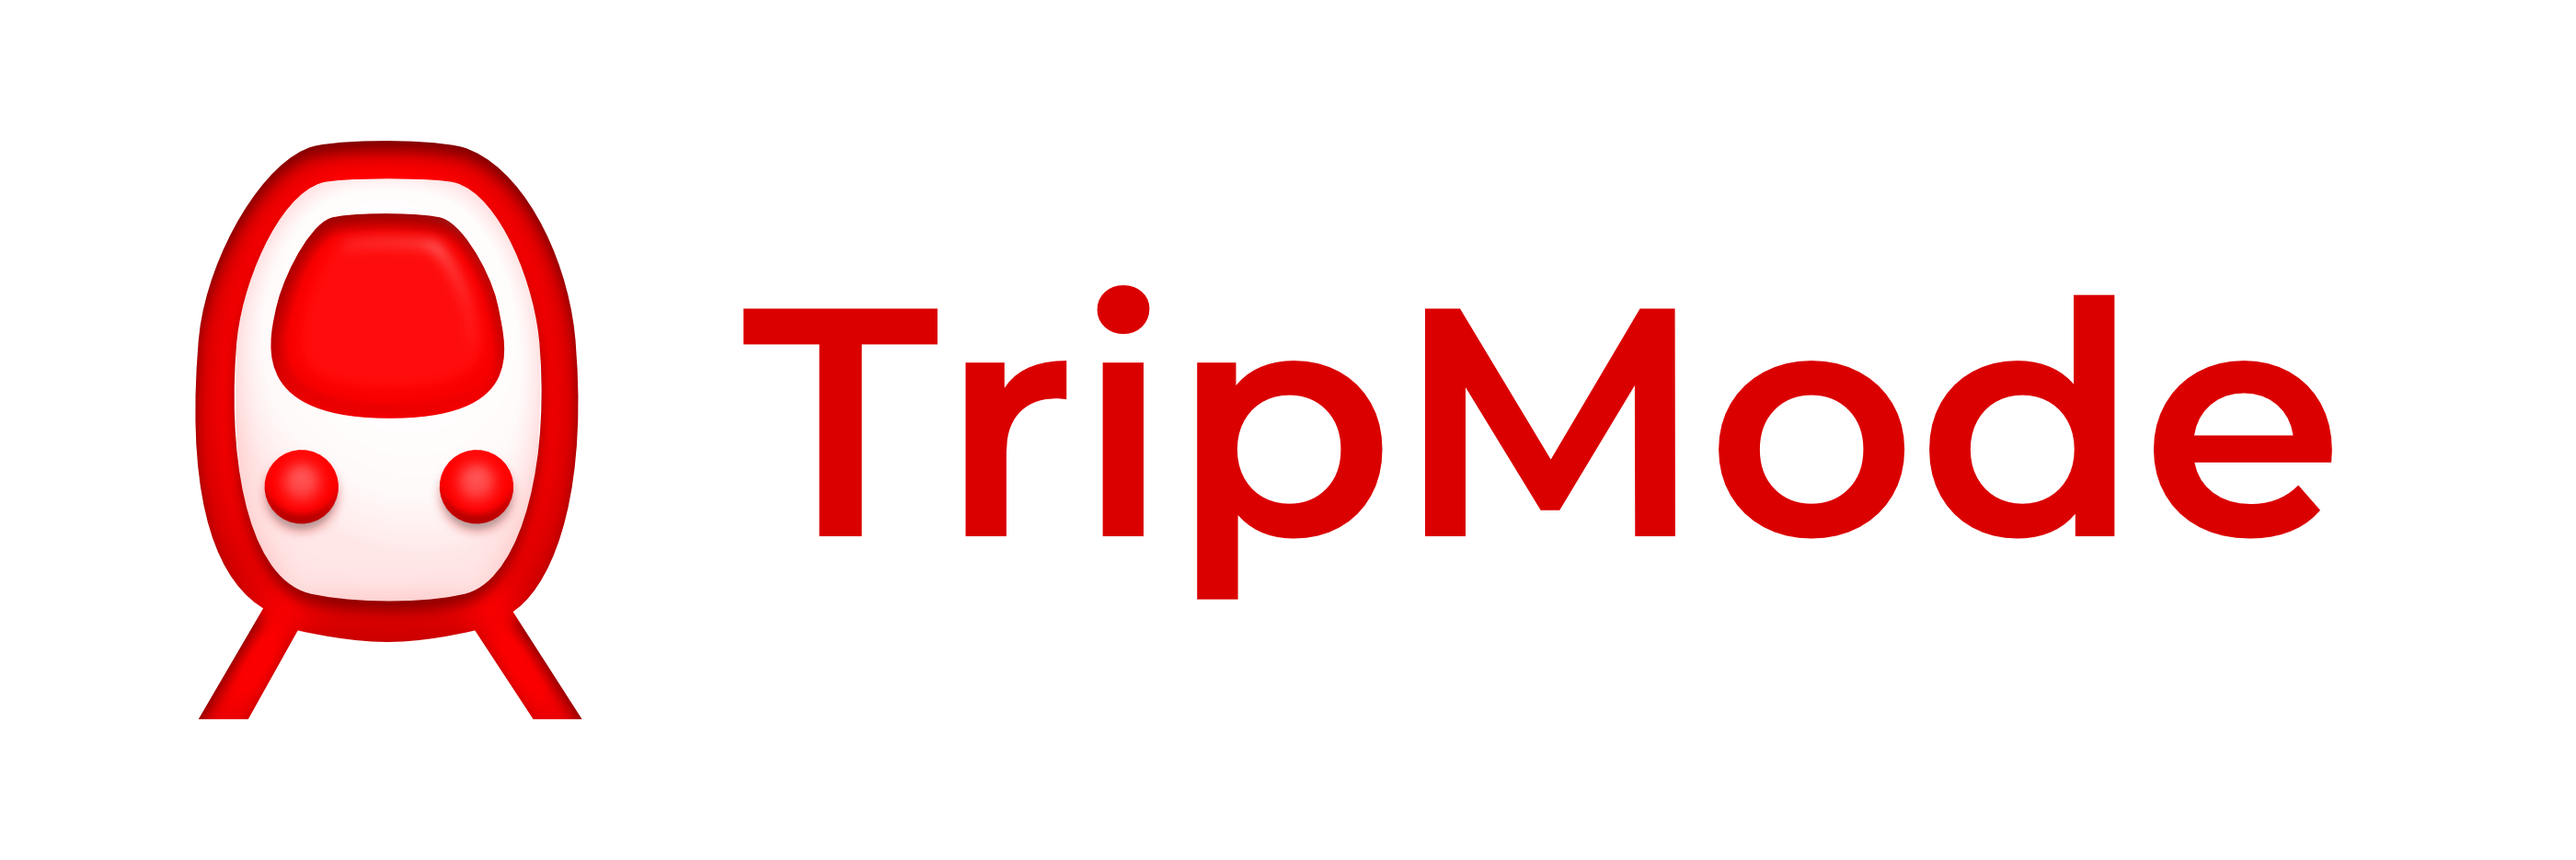 Tripmode3 logo and text b